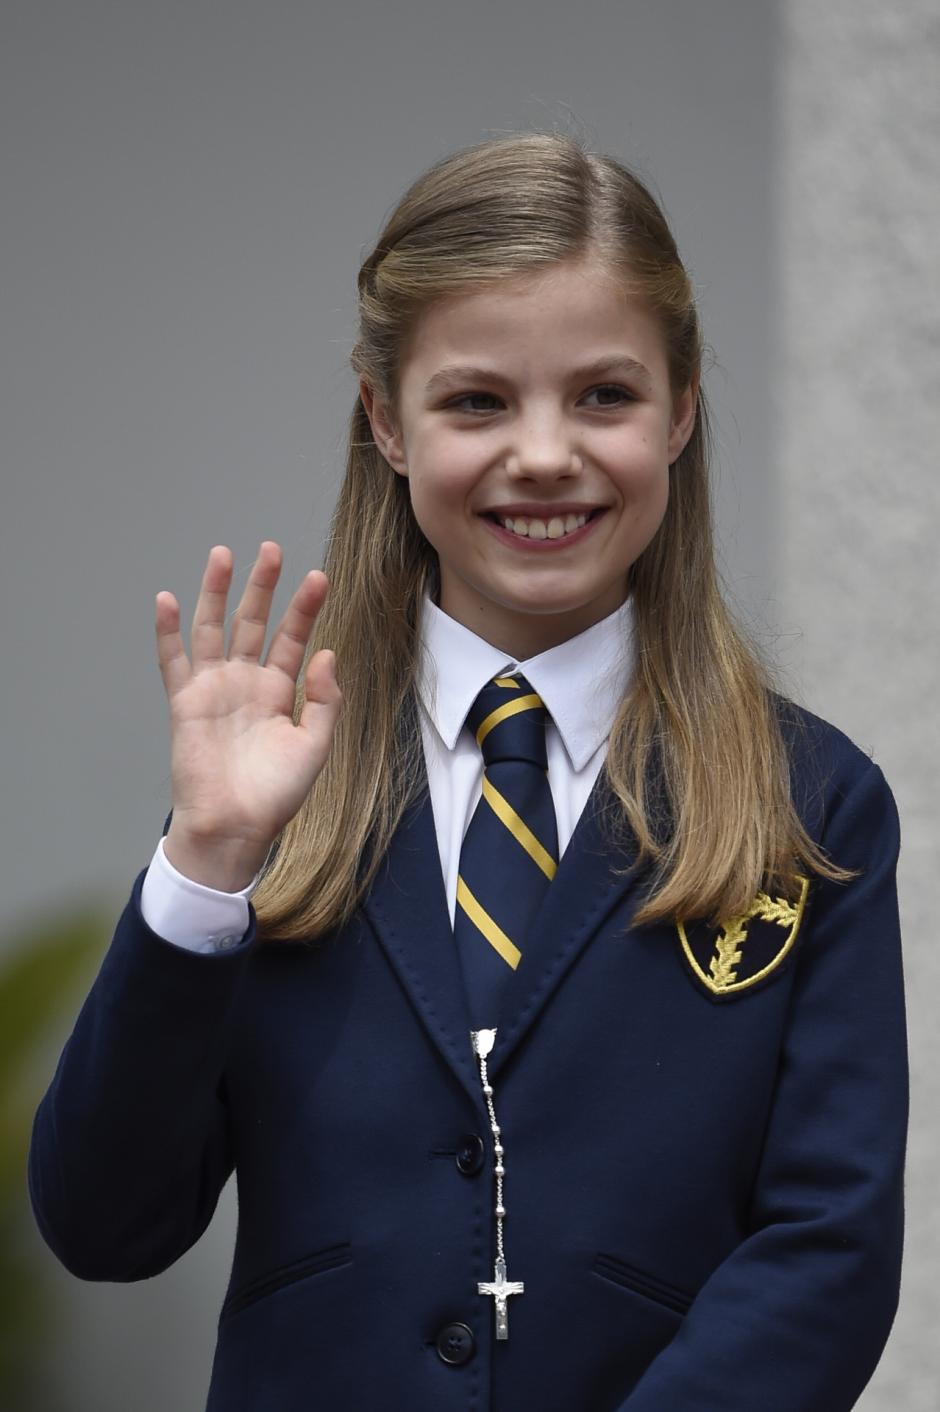 La Infanta Sofía de Borbón en su Primera Comunión en Madrid